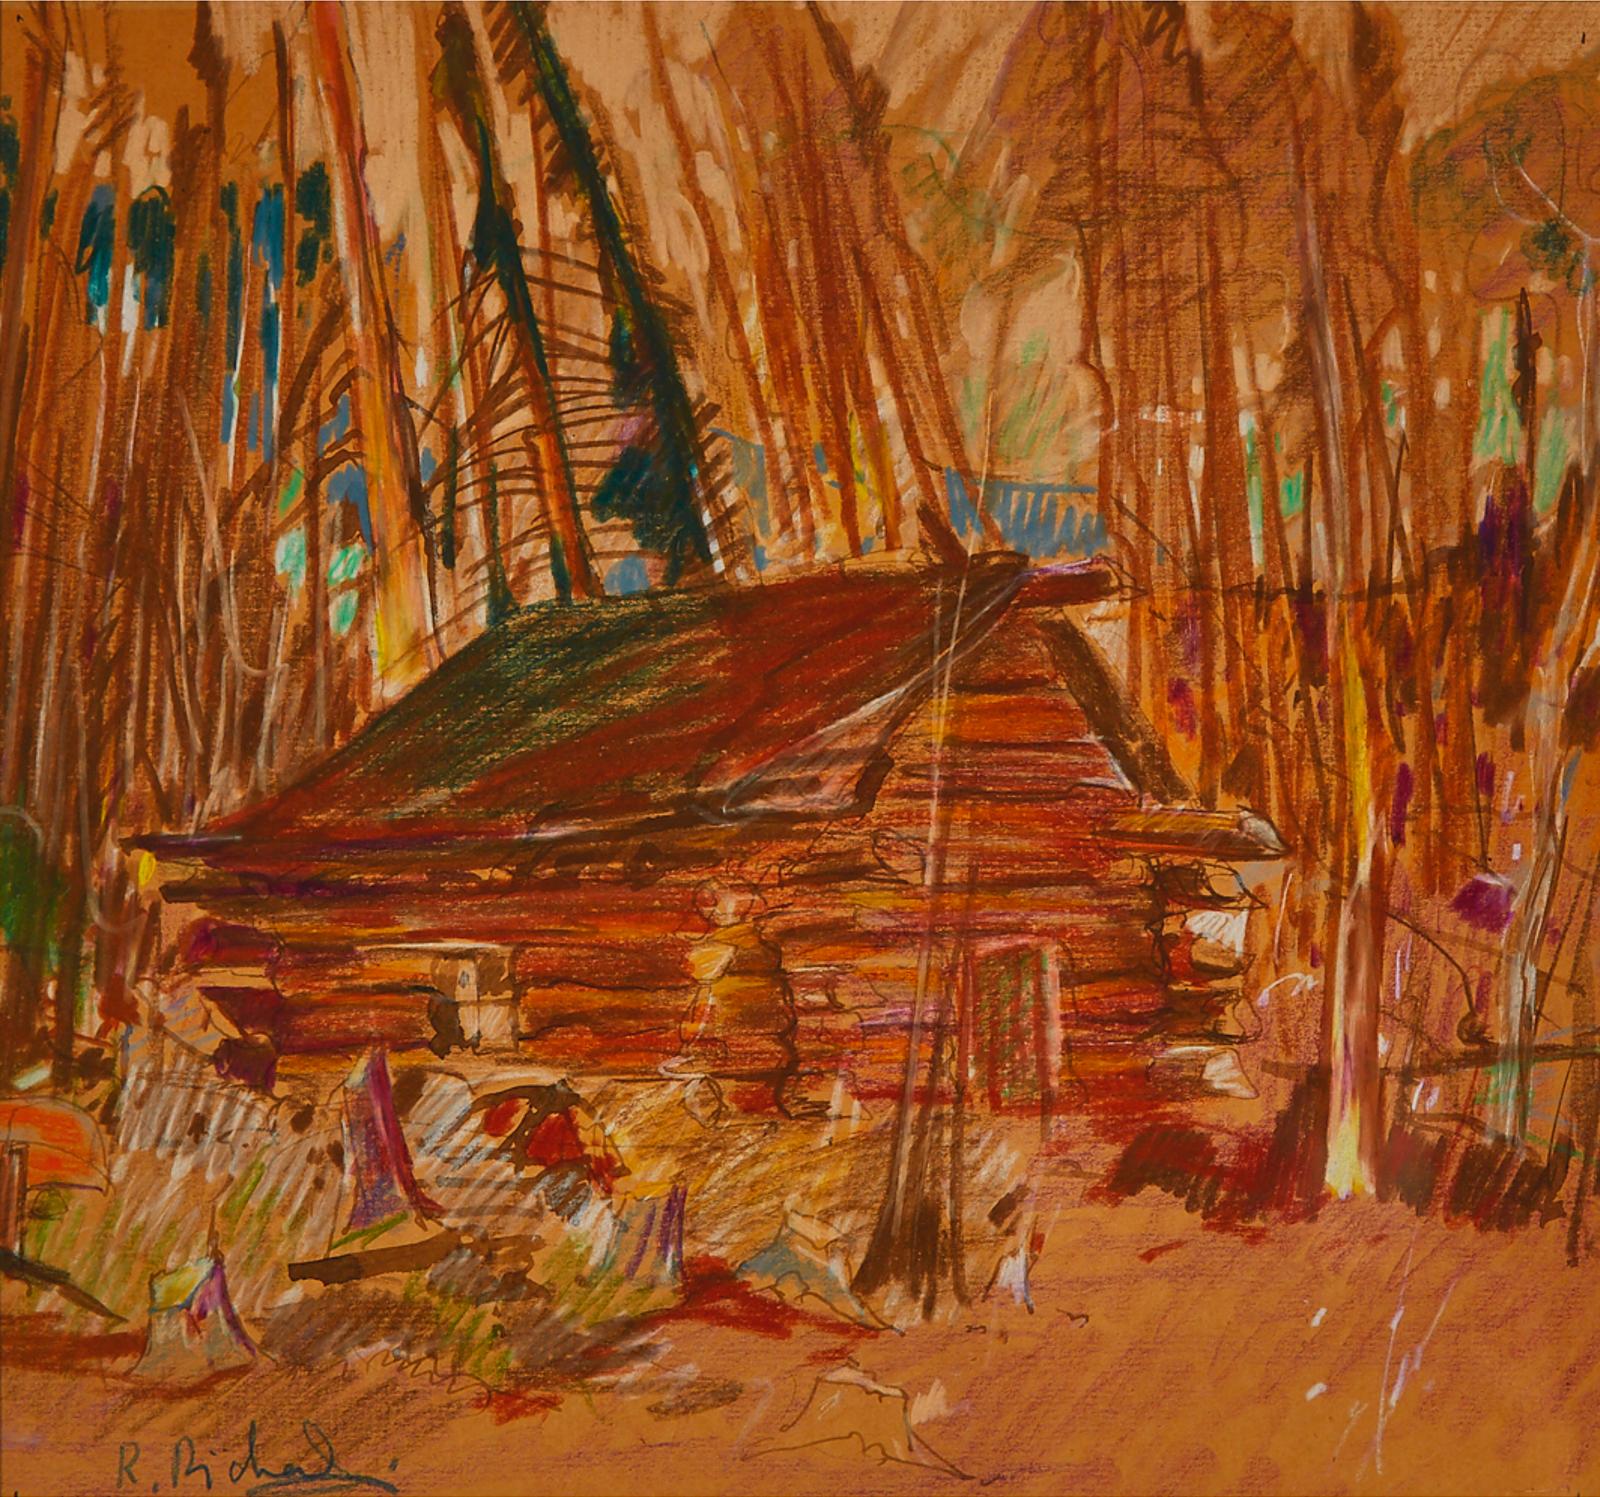 René Jean Richard (1895-1982) - Cabin In The Woods